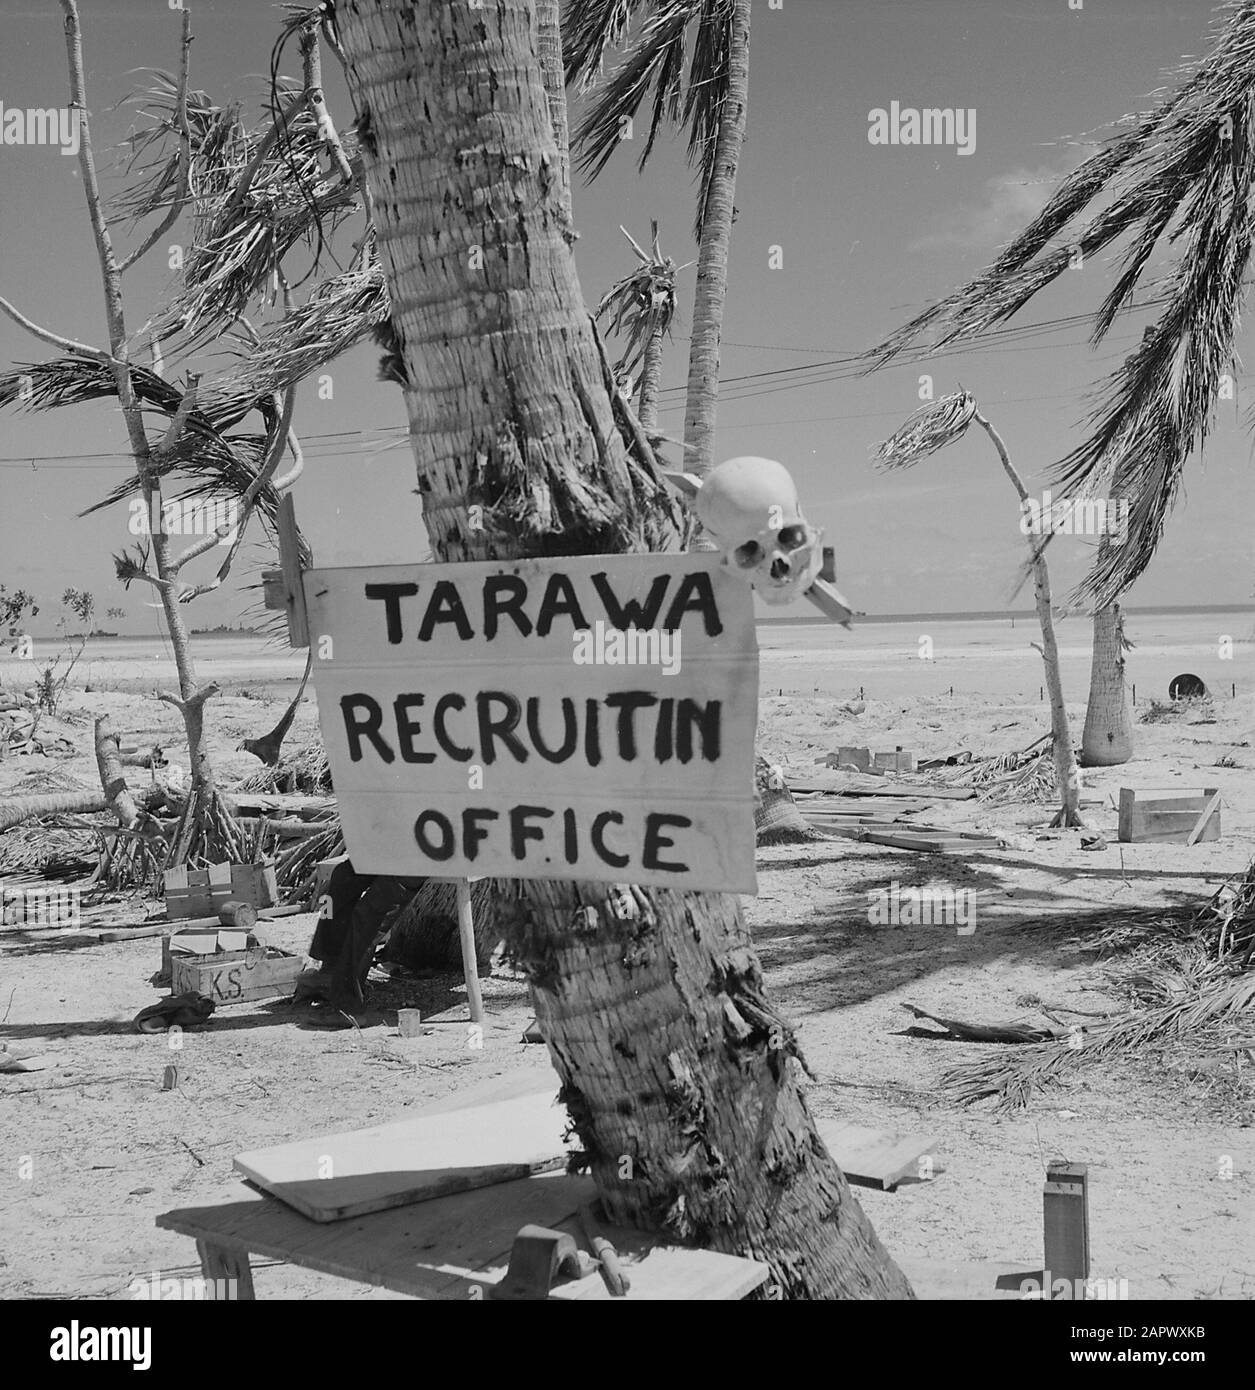 Grimmiger Humor auf Tarawa - Schild mit Schädel auf Tarawa Dezember 1943 Stockfoto